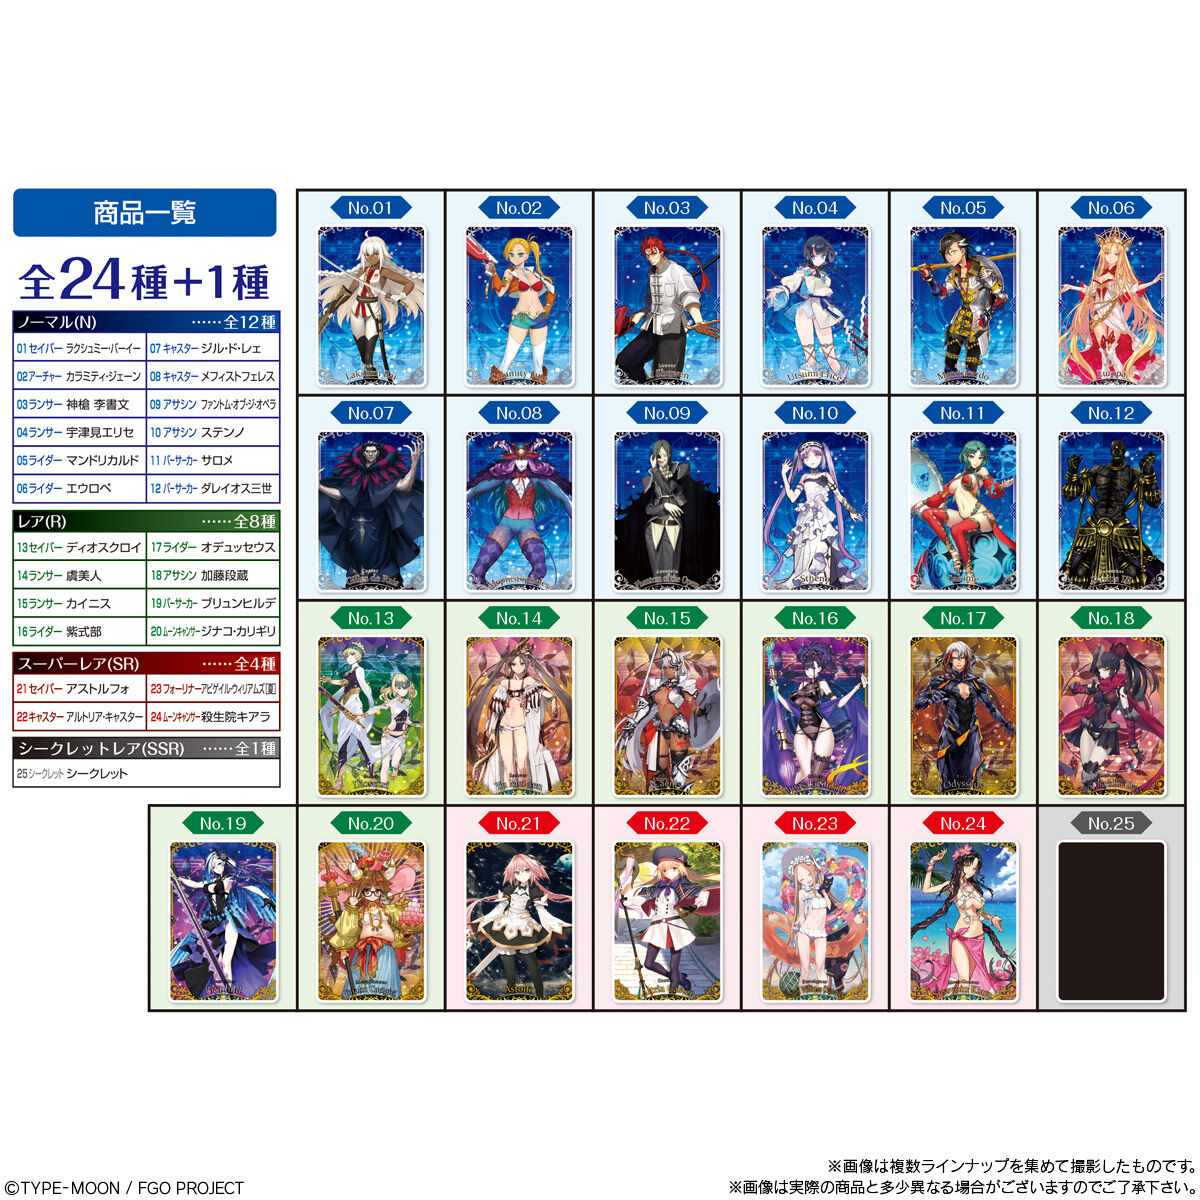 【食玩】Fate/Grand Order『Fate/Grand Order ウエハース10』20個入りBOX-006